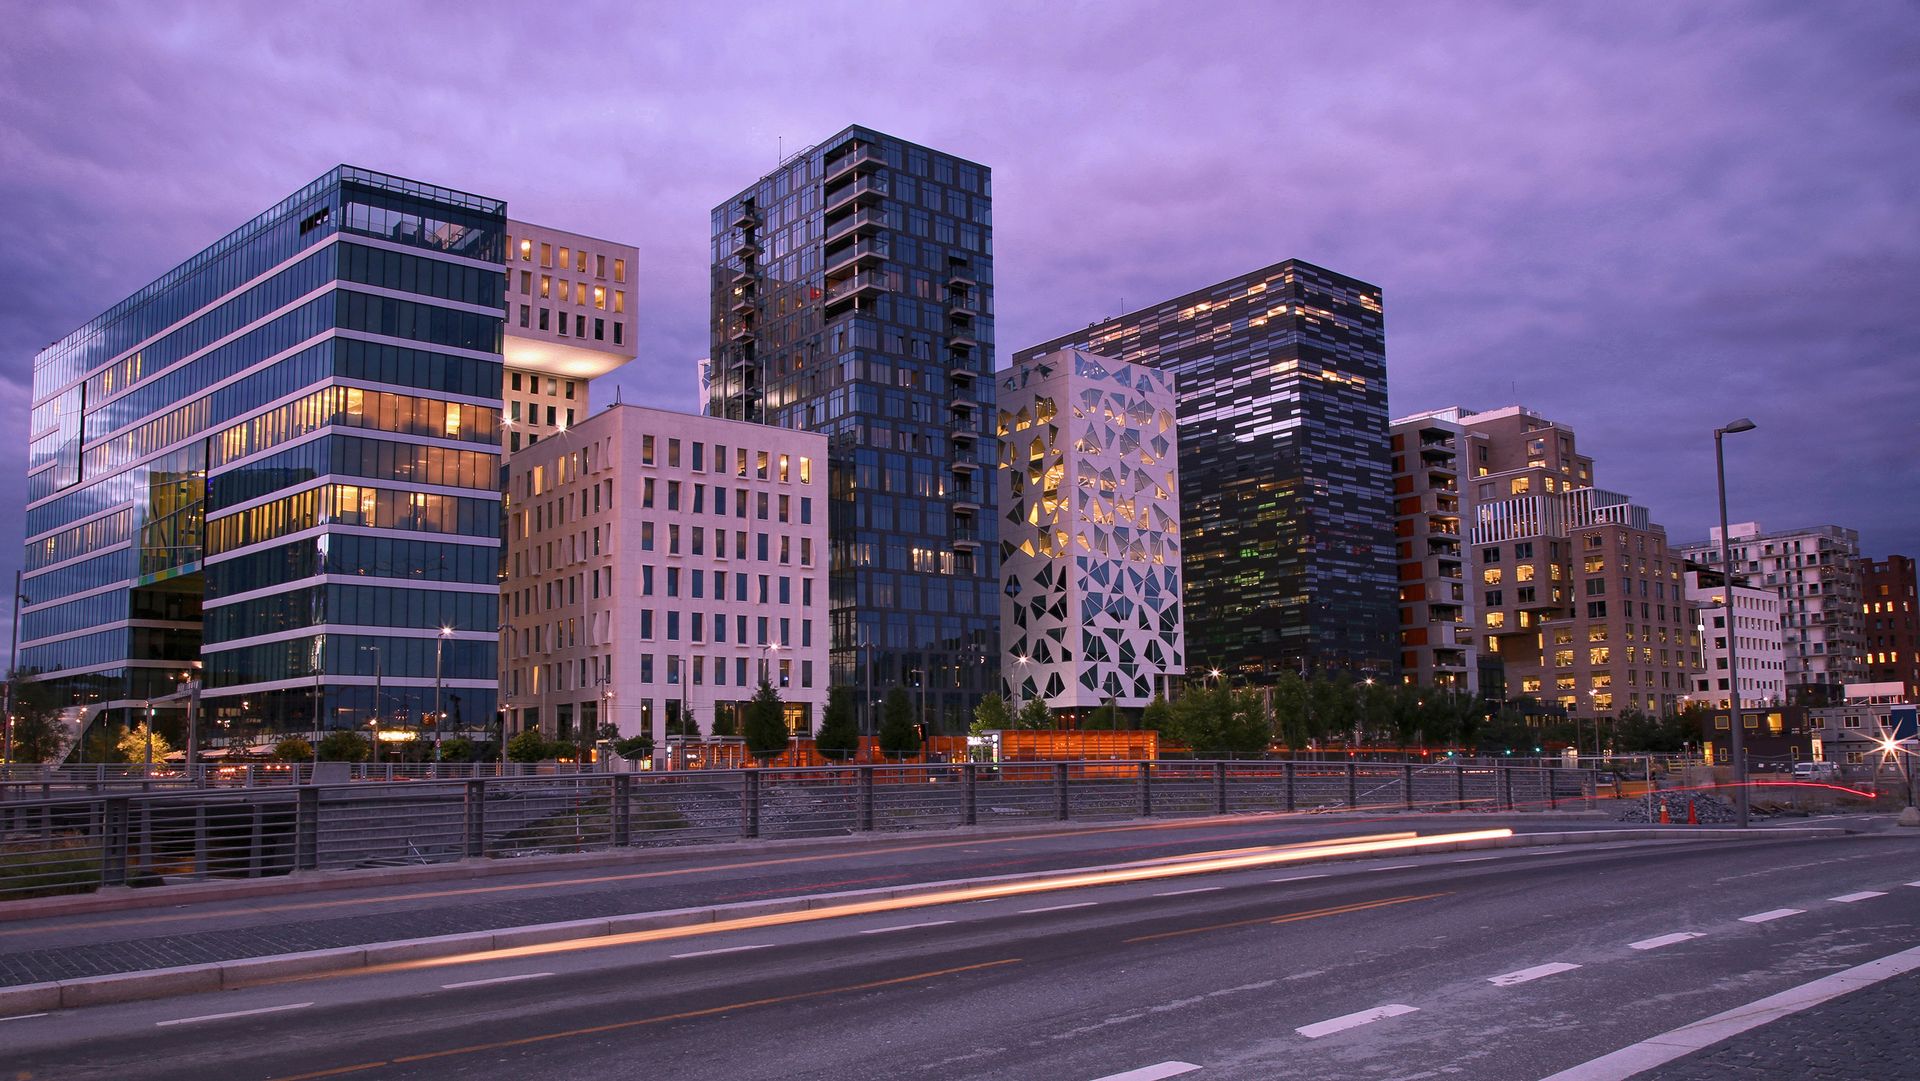 ANNONSE: Denne delen av Oslo hviler på luft og knust glass